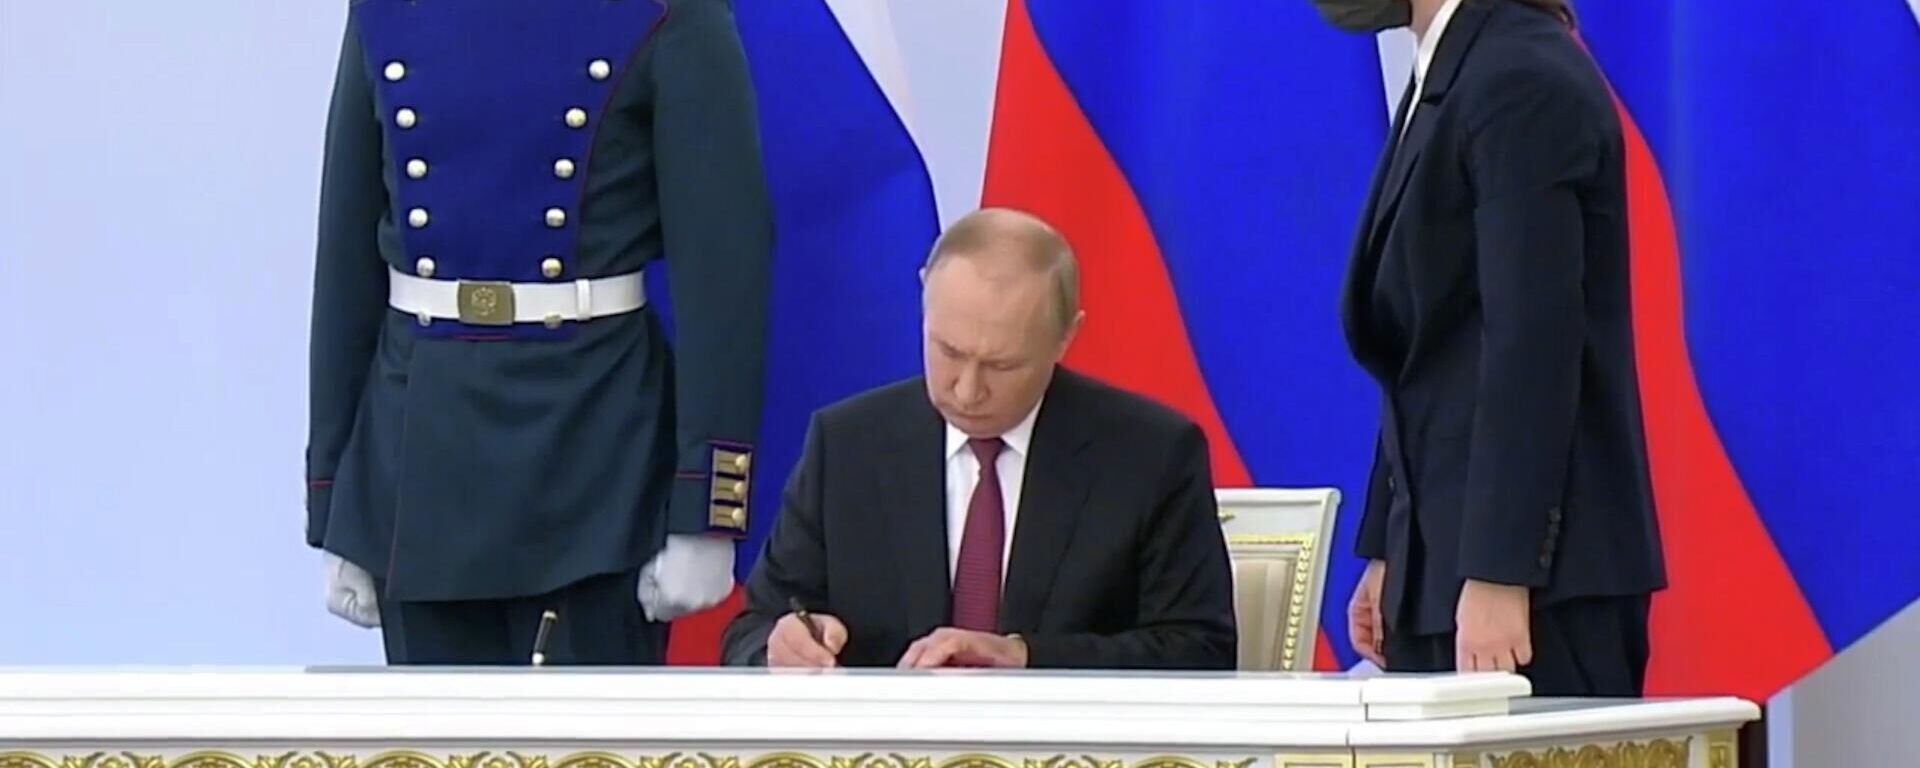 ՌԴ նախագահ Վլադիմիր Պուտինը ստորագրեց ԴԺՀ-ն, ԼԺՀ-ն, Զապորոժիեի և Խերսոնի մարզերը ՌԴ կազմում ընդգրկելու պայմանագրերը - Sputnik Արմենիա, 1920, 30.09.2022